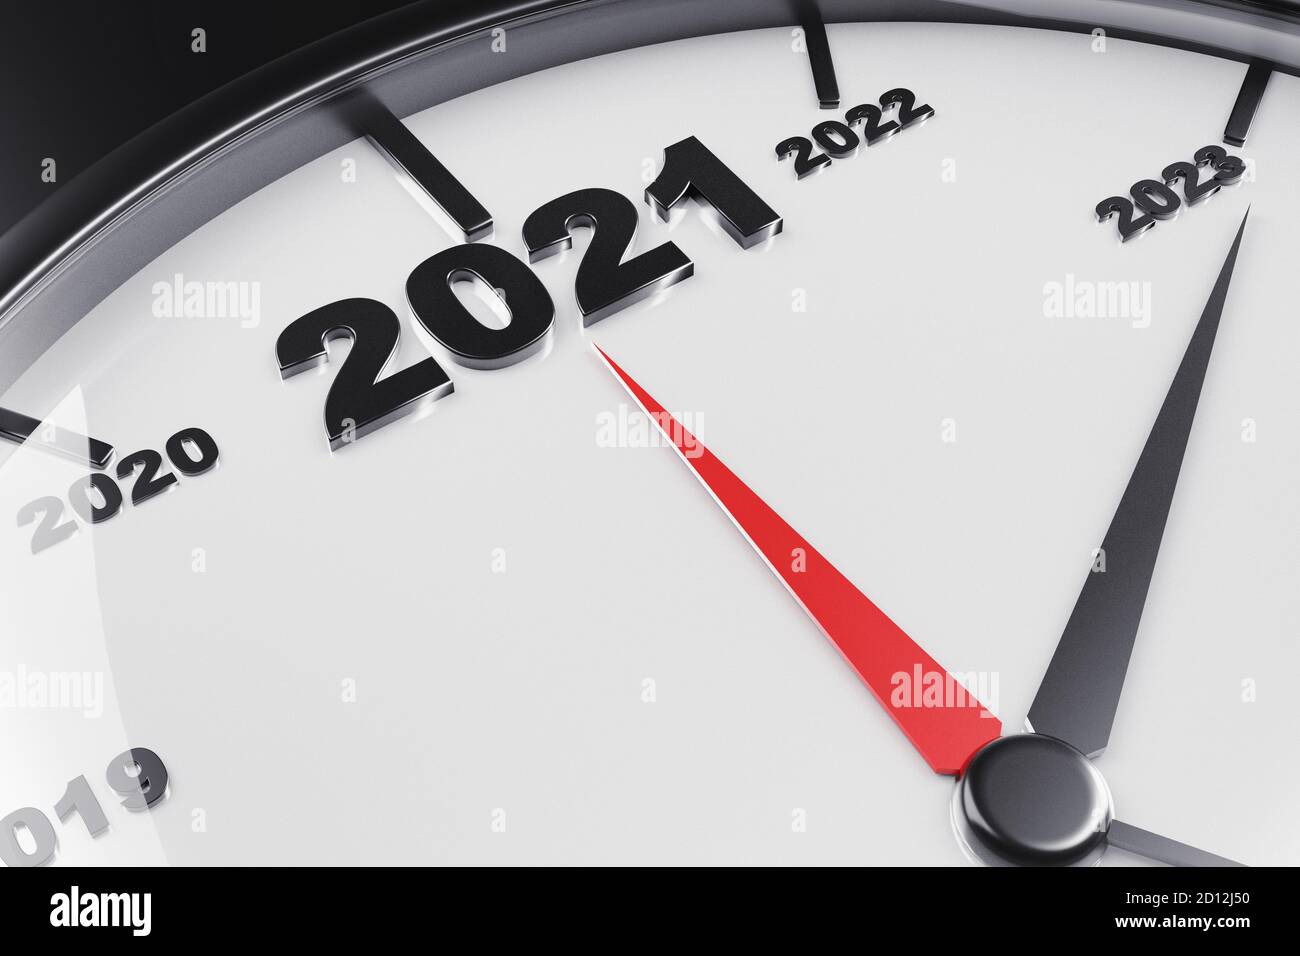 cuenta atrás para el nuevo año 2021 con una metáfora del reloj de ticking. Concepto de año nuevo. Foto de alta calidad Foto de stock